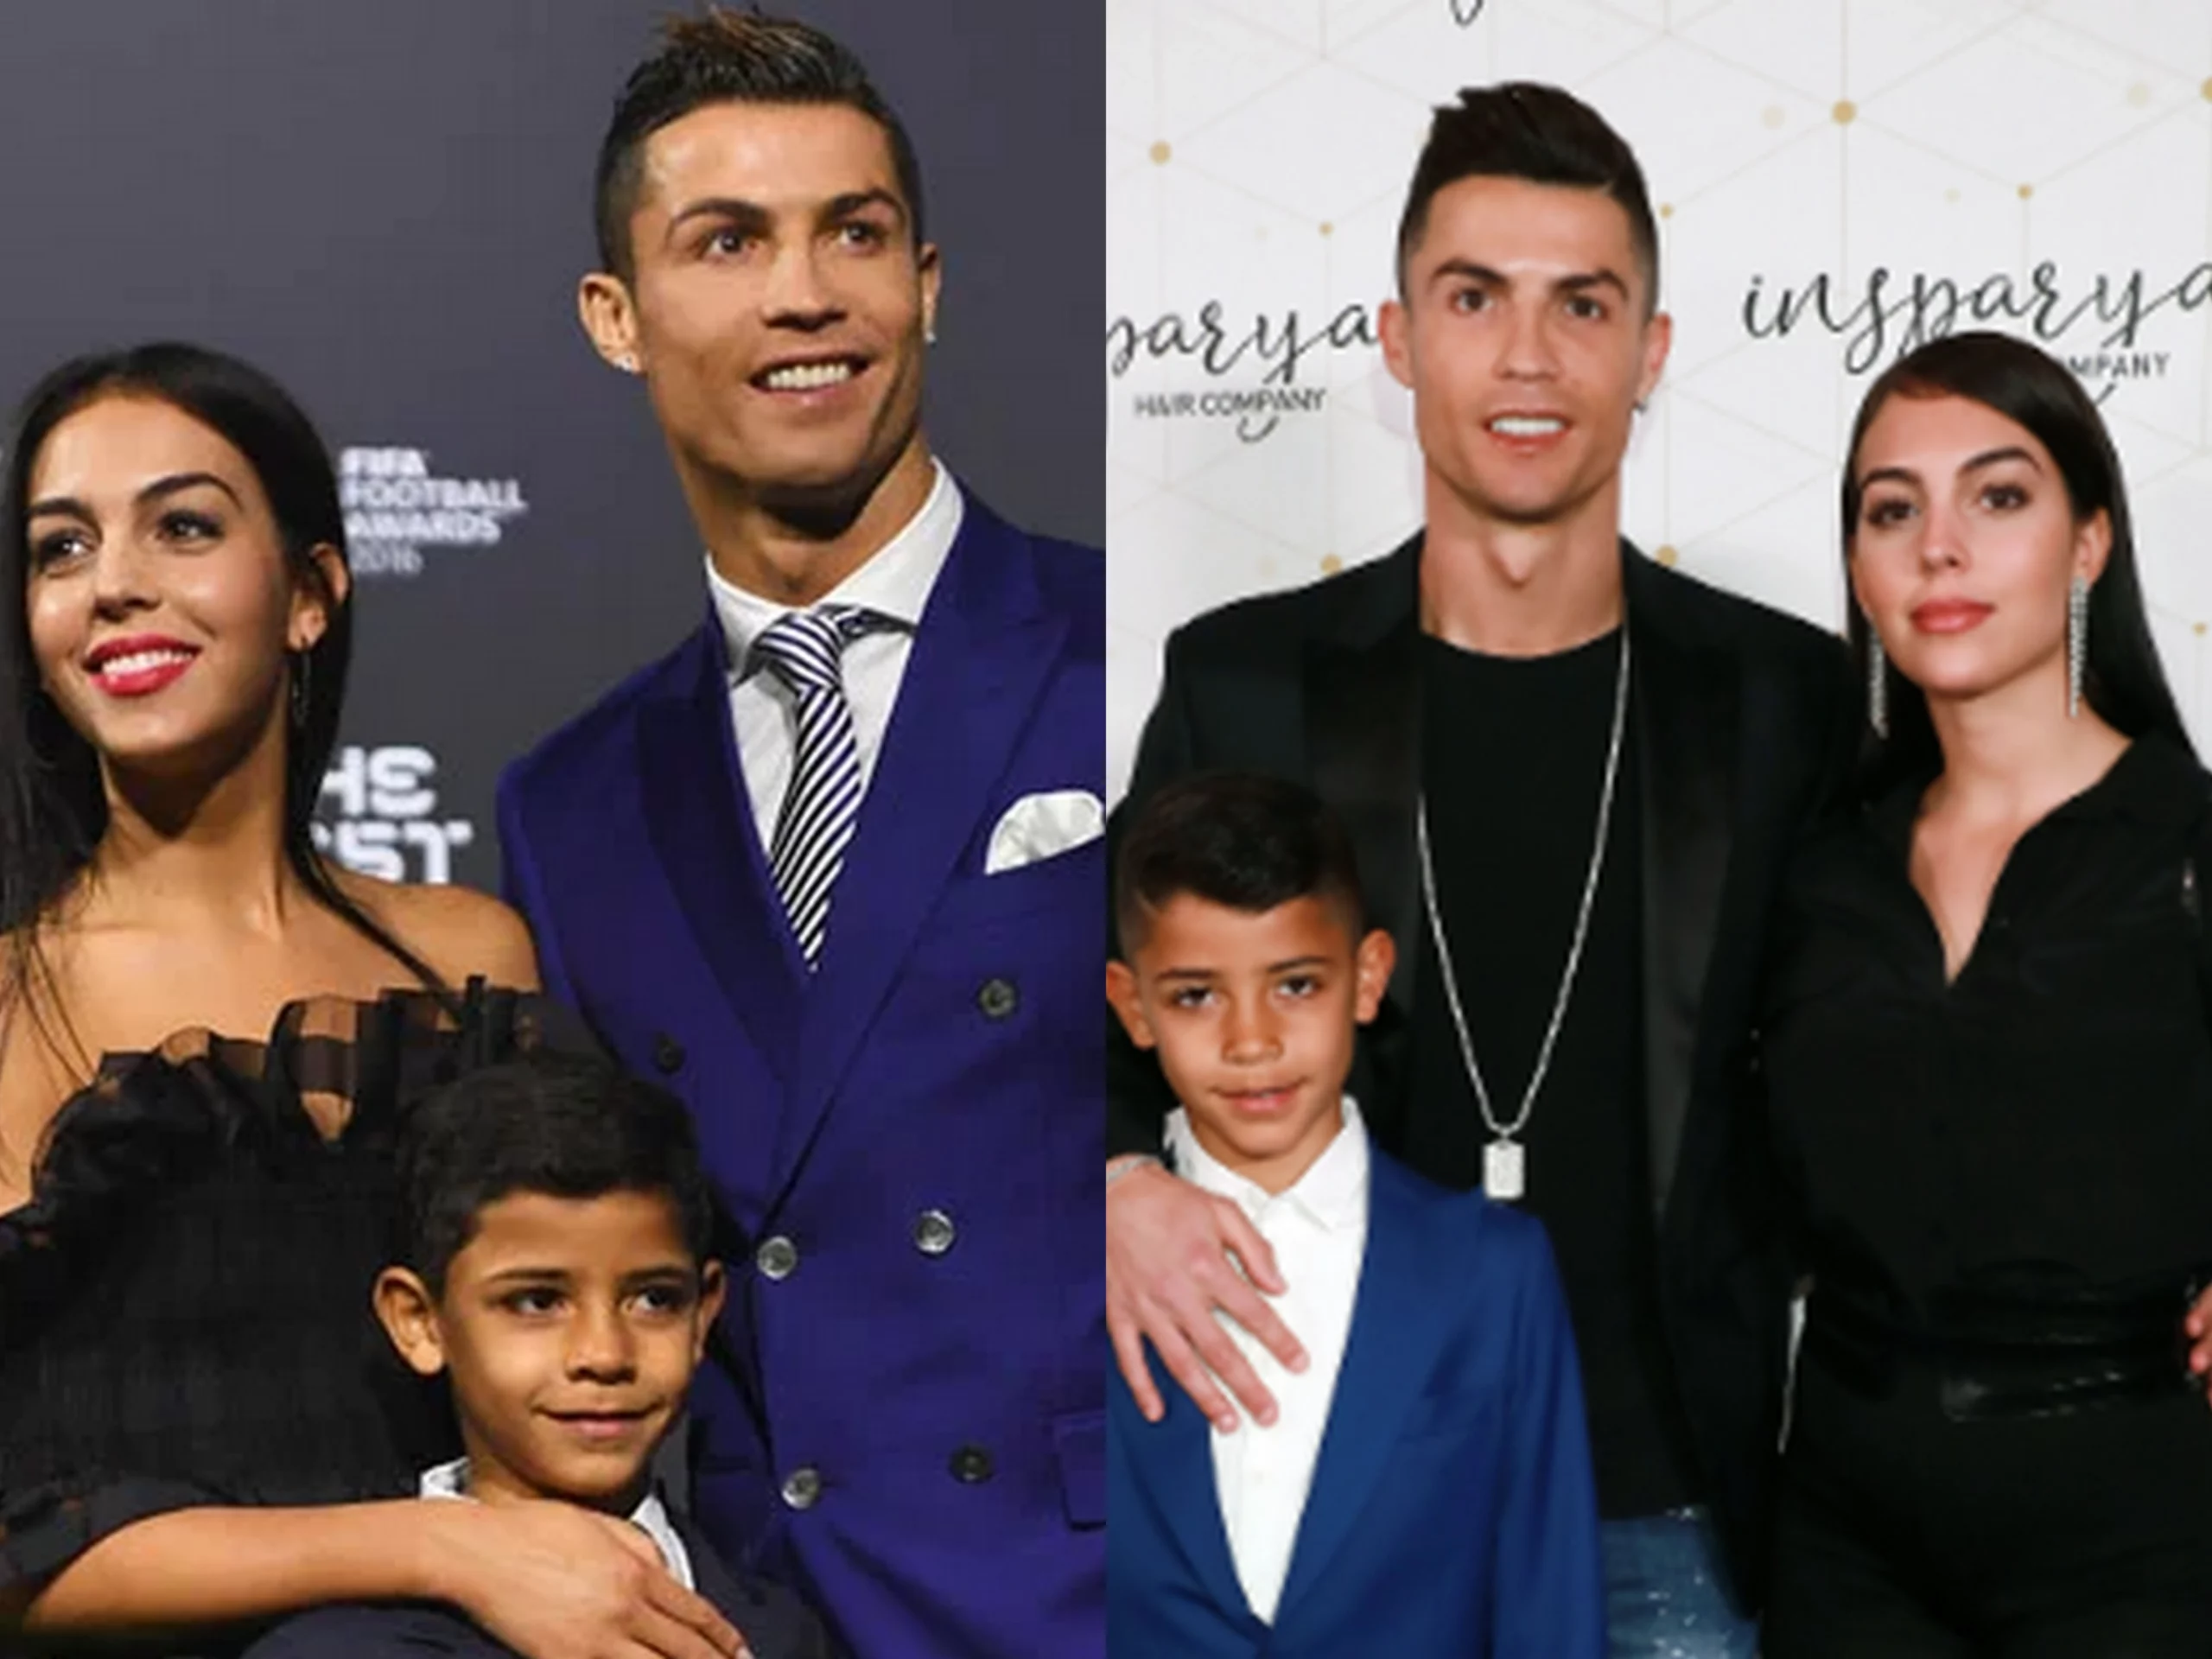 Ronaldo Jrs mother scaled